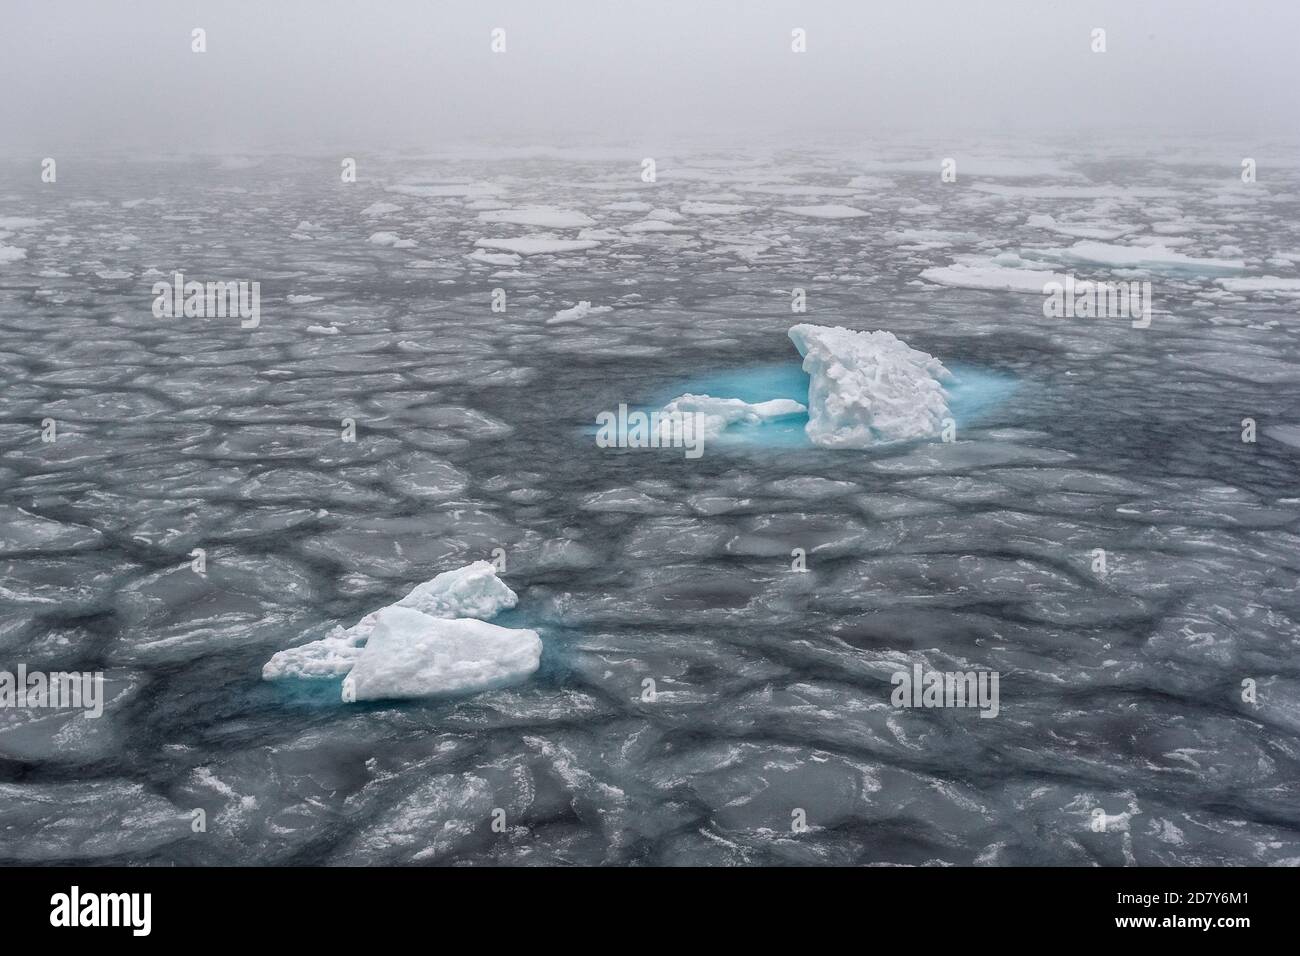 Hielo a la deriva en el Océano Ártico en Svalbard. El hielo del paquete flota como una capa de hielo en el mar en el círculo ártico al norte de Svalbard, Spitsbergen. Foto de stock